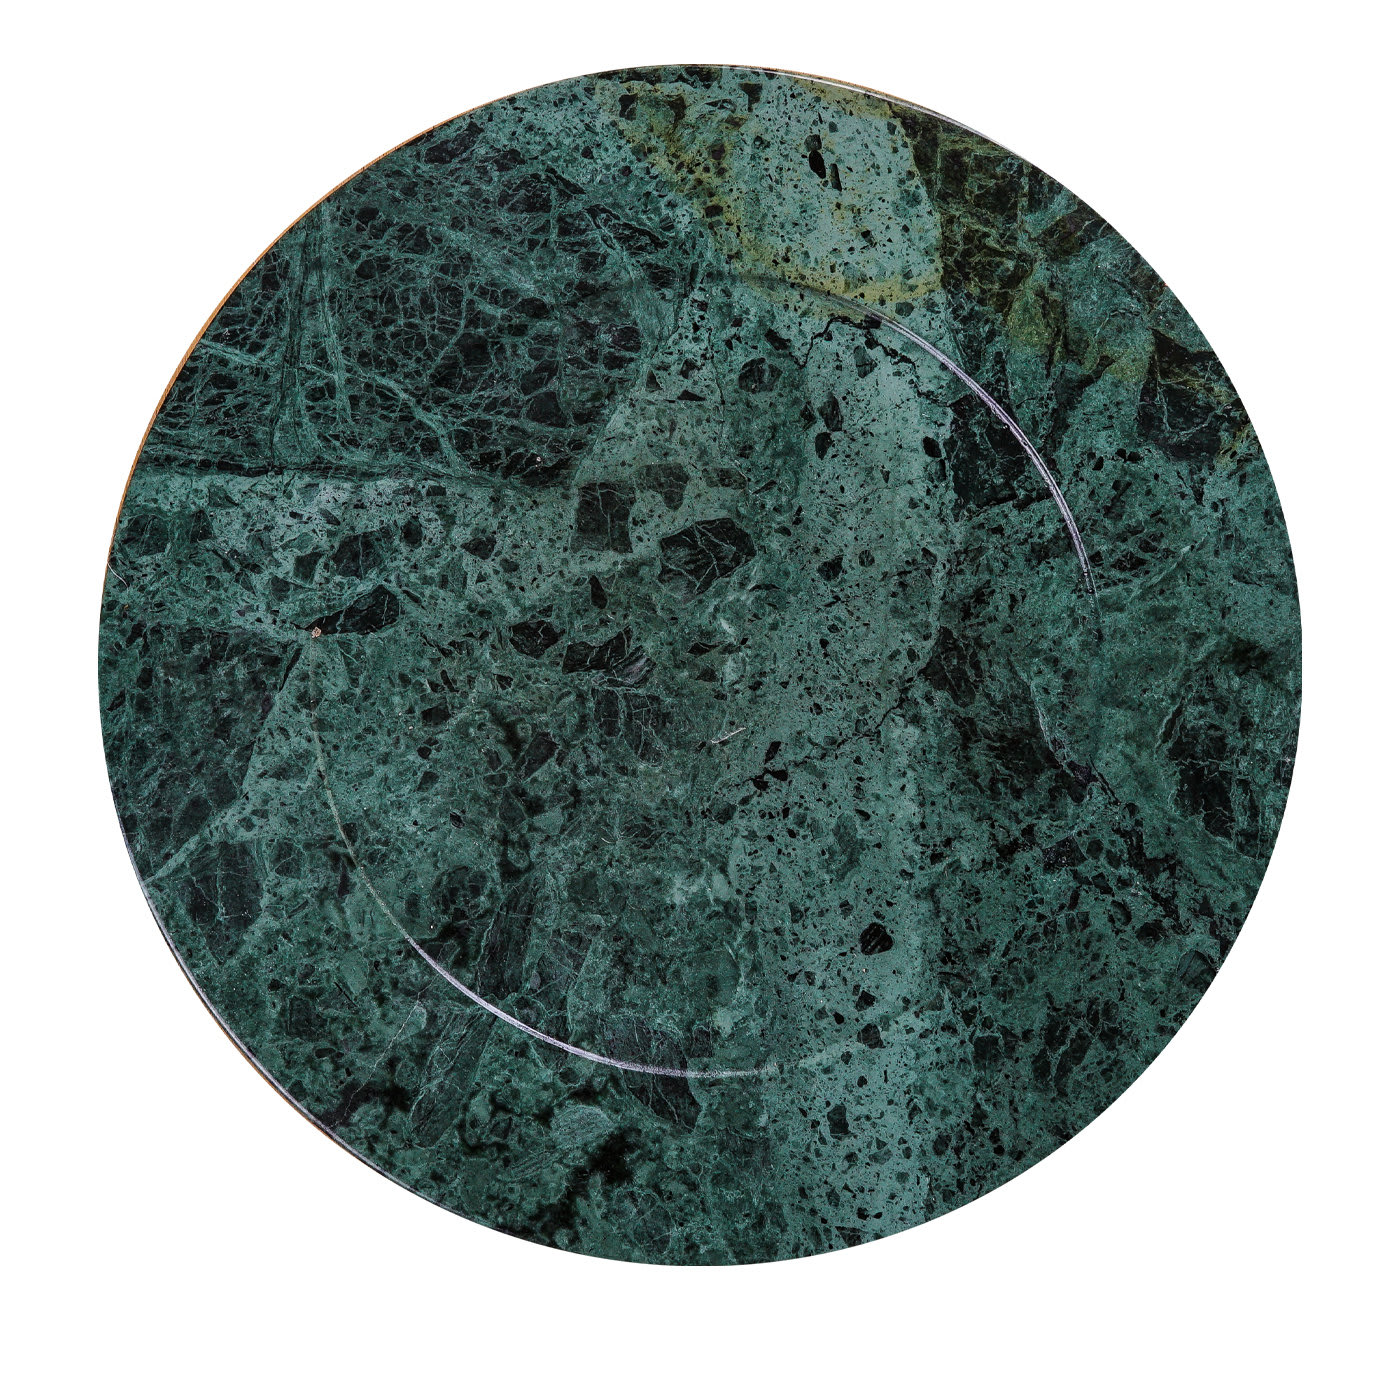 Omero Plate in Green Guatemala Marble - La Sartoria del Marmo by Lombardi Marmi